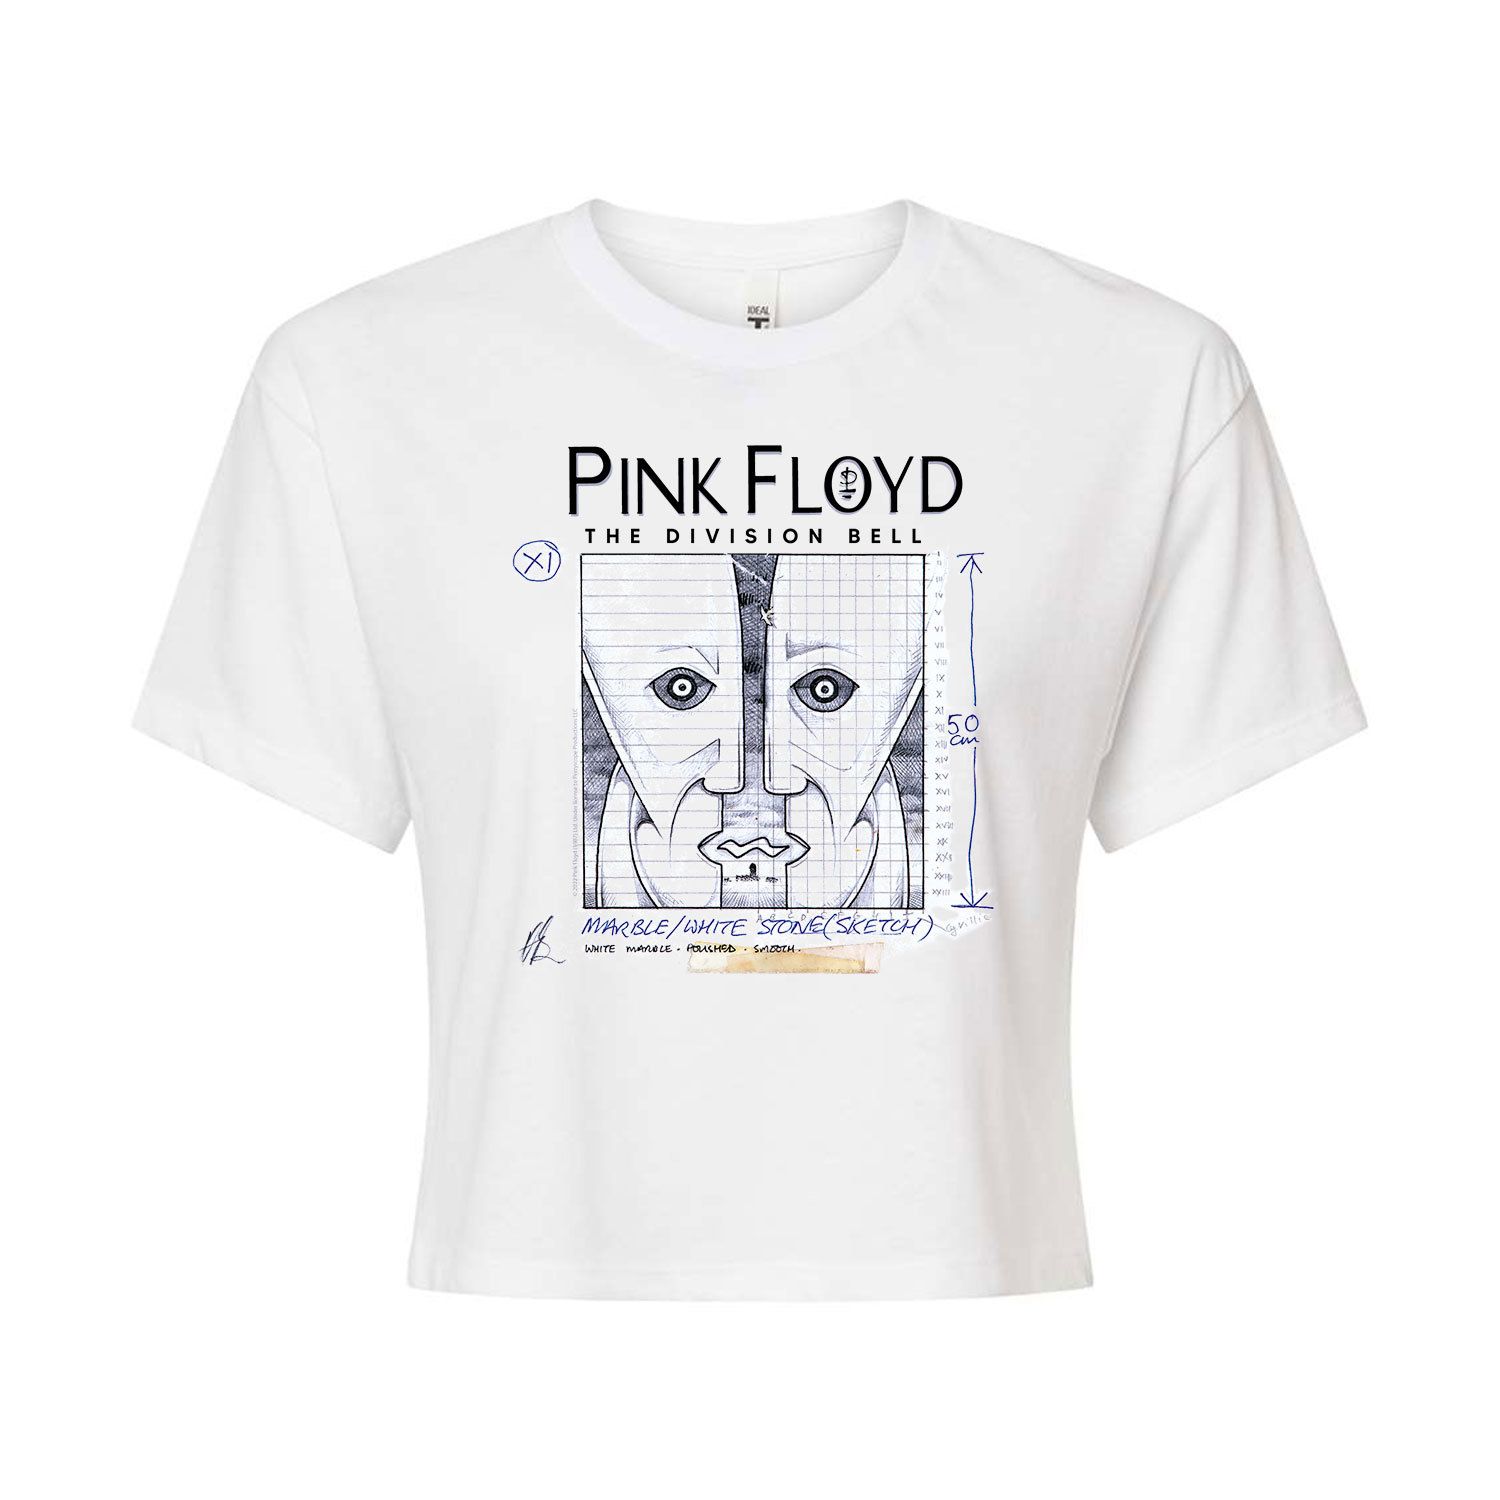 Укороченная футболка Pink Floyd The Division Bell для юниоров Licensed Character